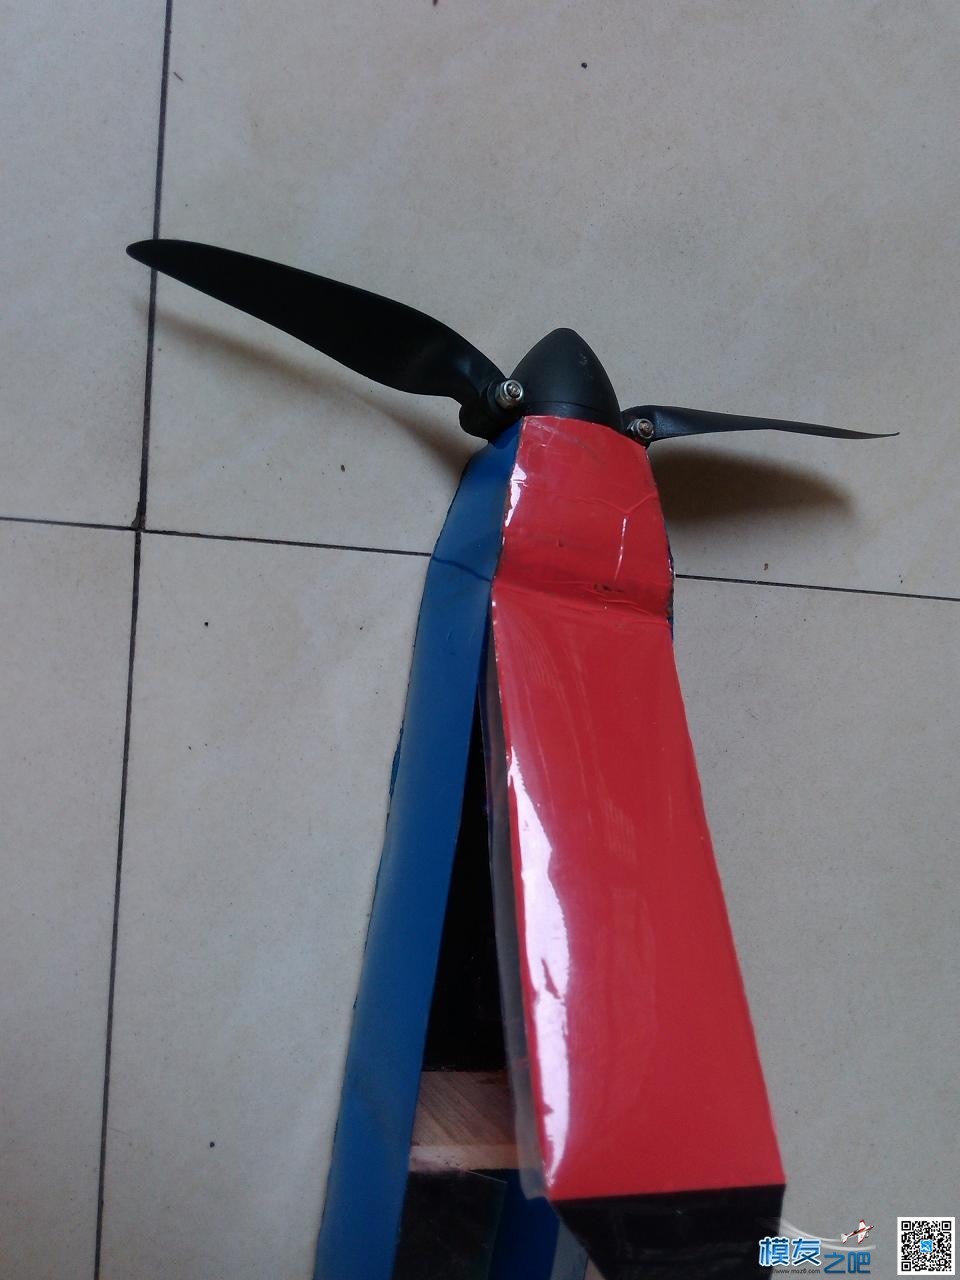 用瓶子折纸法制作滑翔机机头机身。已完成。老鸟别笑。.... 碳纤维,滑翔机,制作,专业 作者:cyb2688 9990 